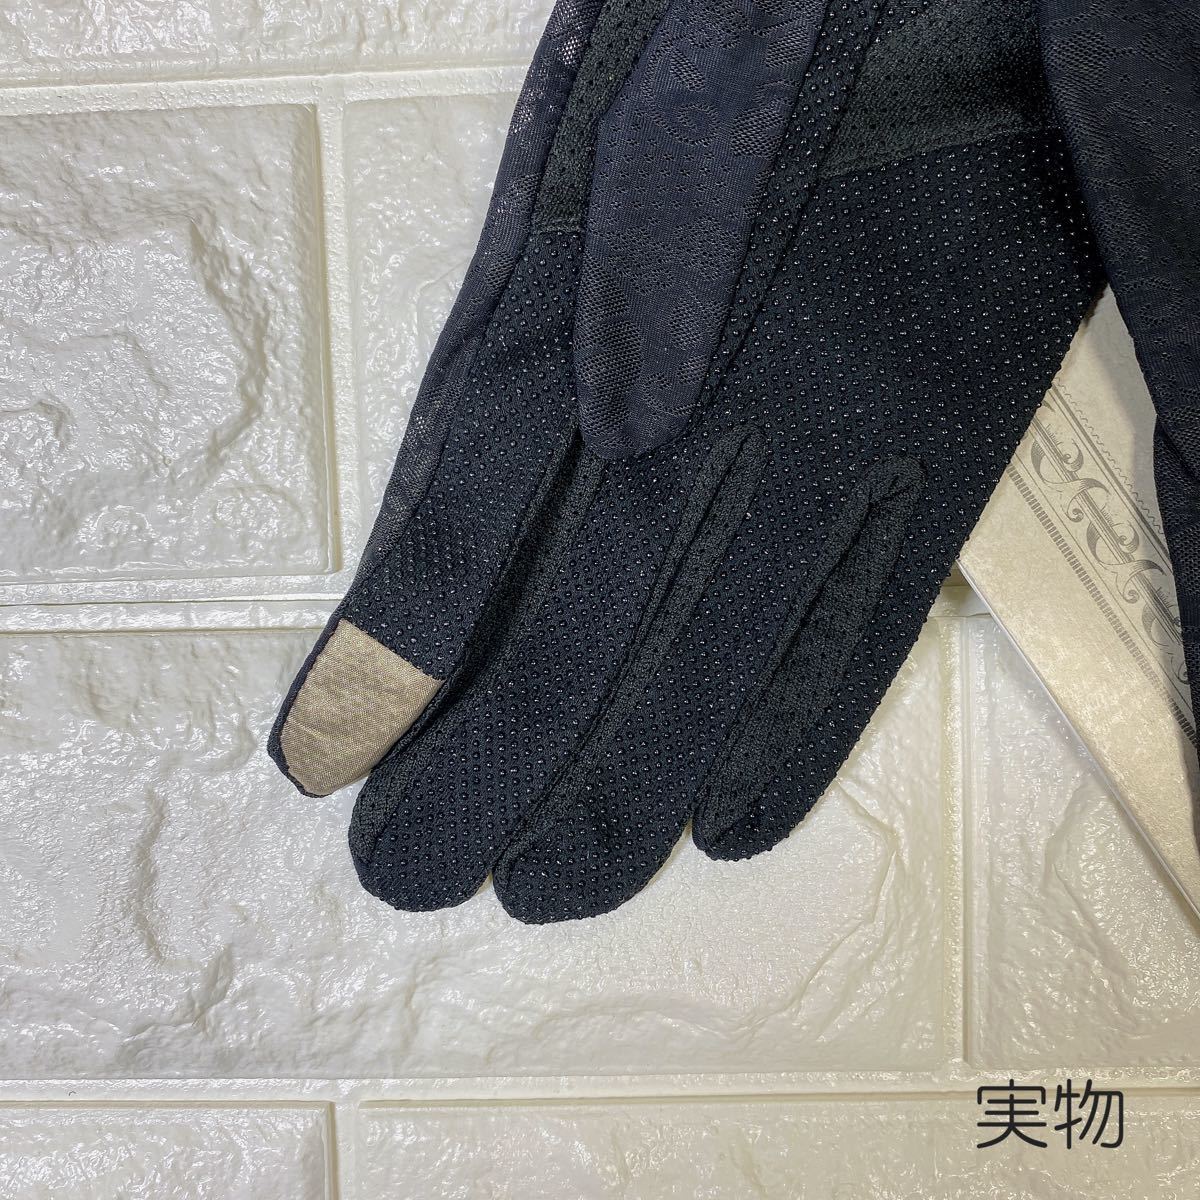 手袋 uvカット 日焼け防止 滑り止め 防菌 コットン 薄型 ブラック